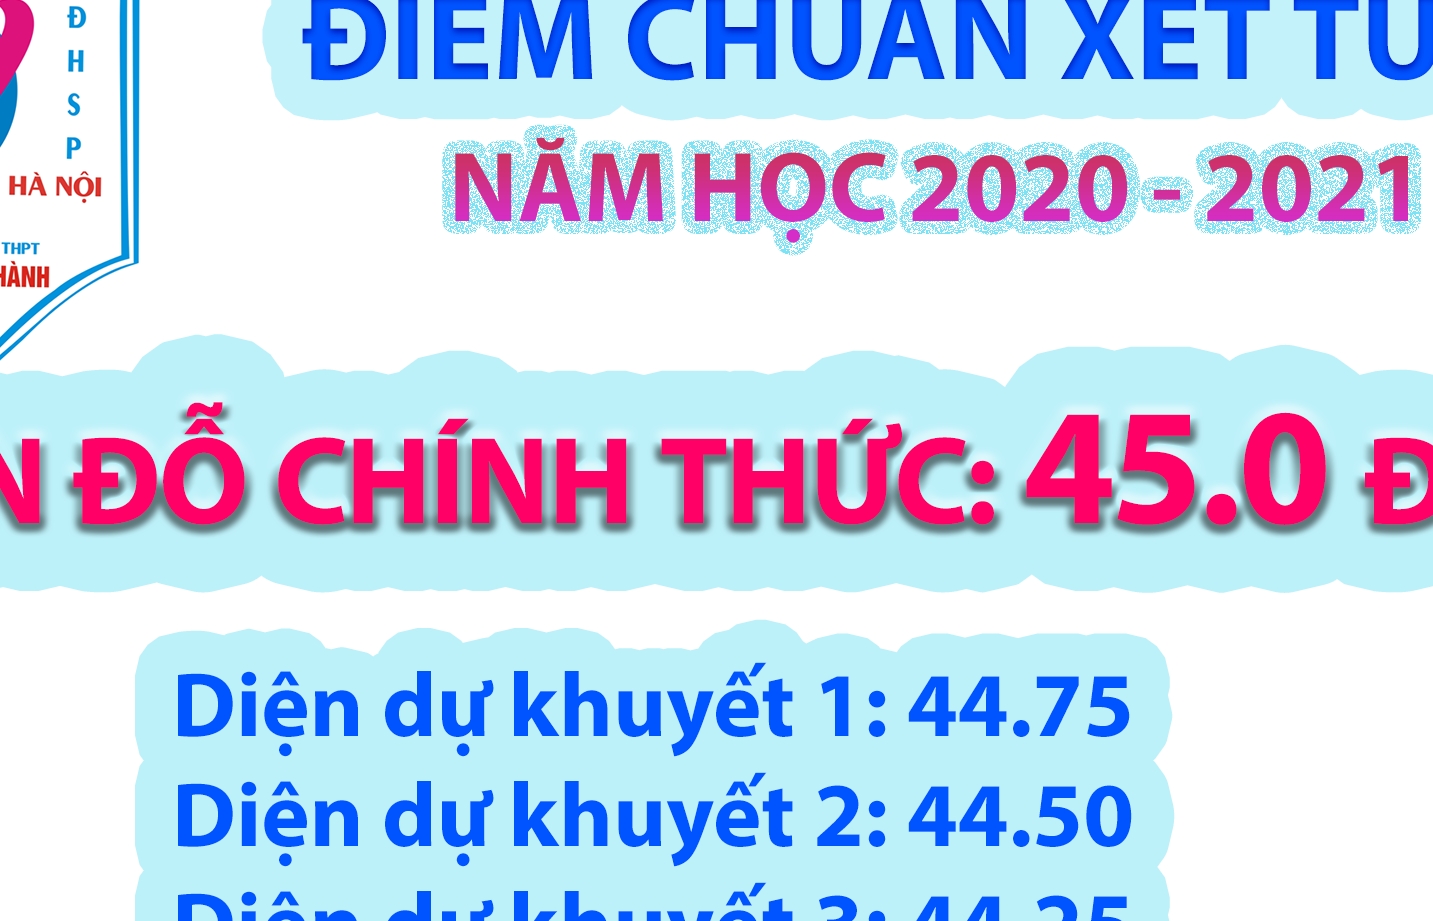 Trường Nguyễn Tất Thành thông báo trúng tuyển cho học sinh diện dự khuyết